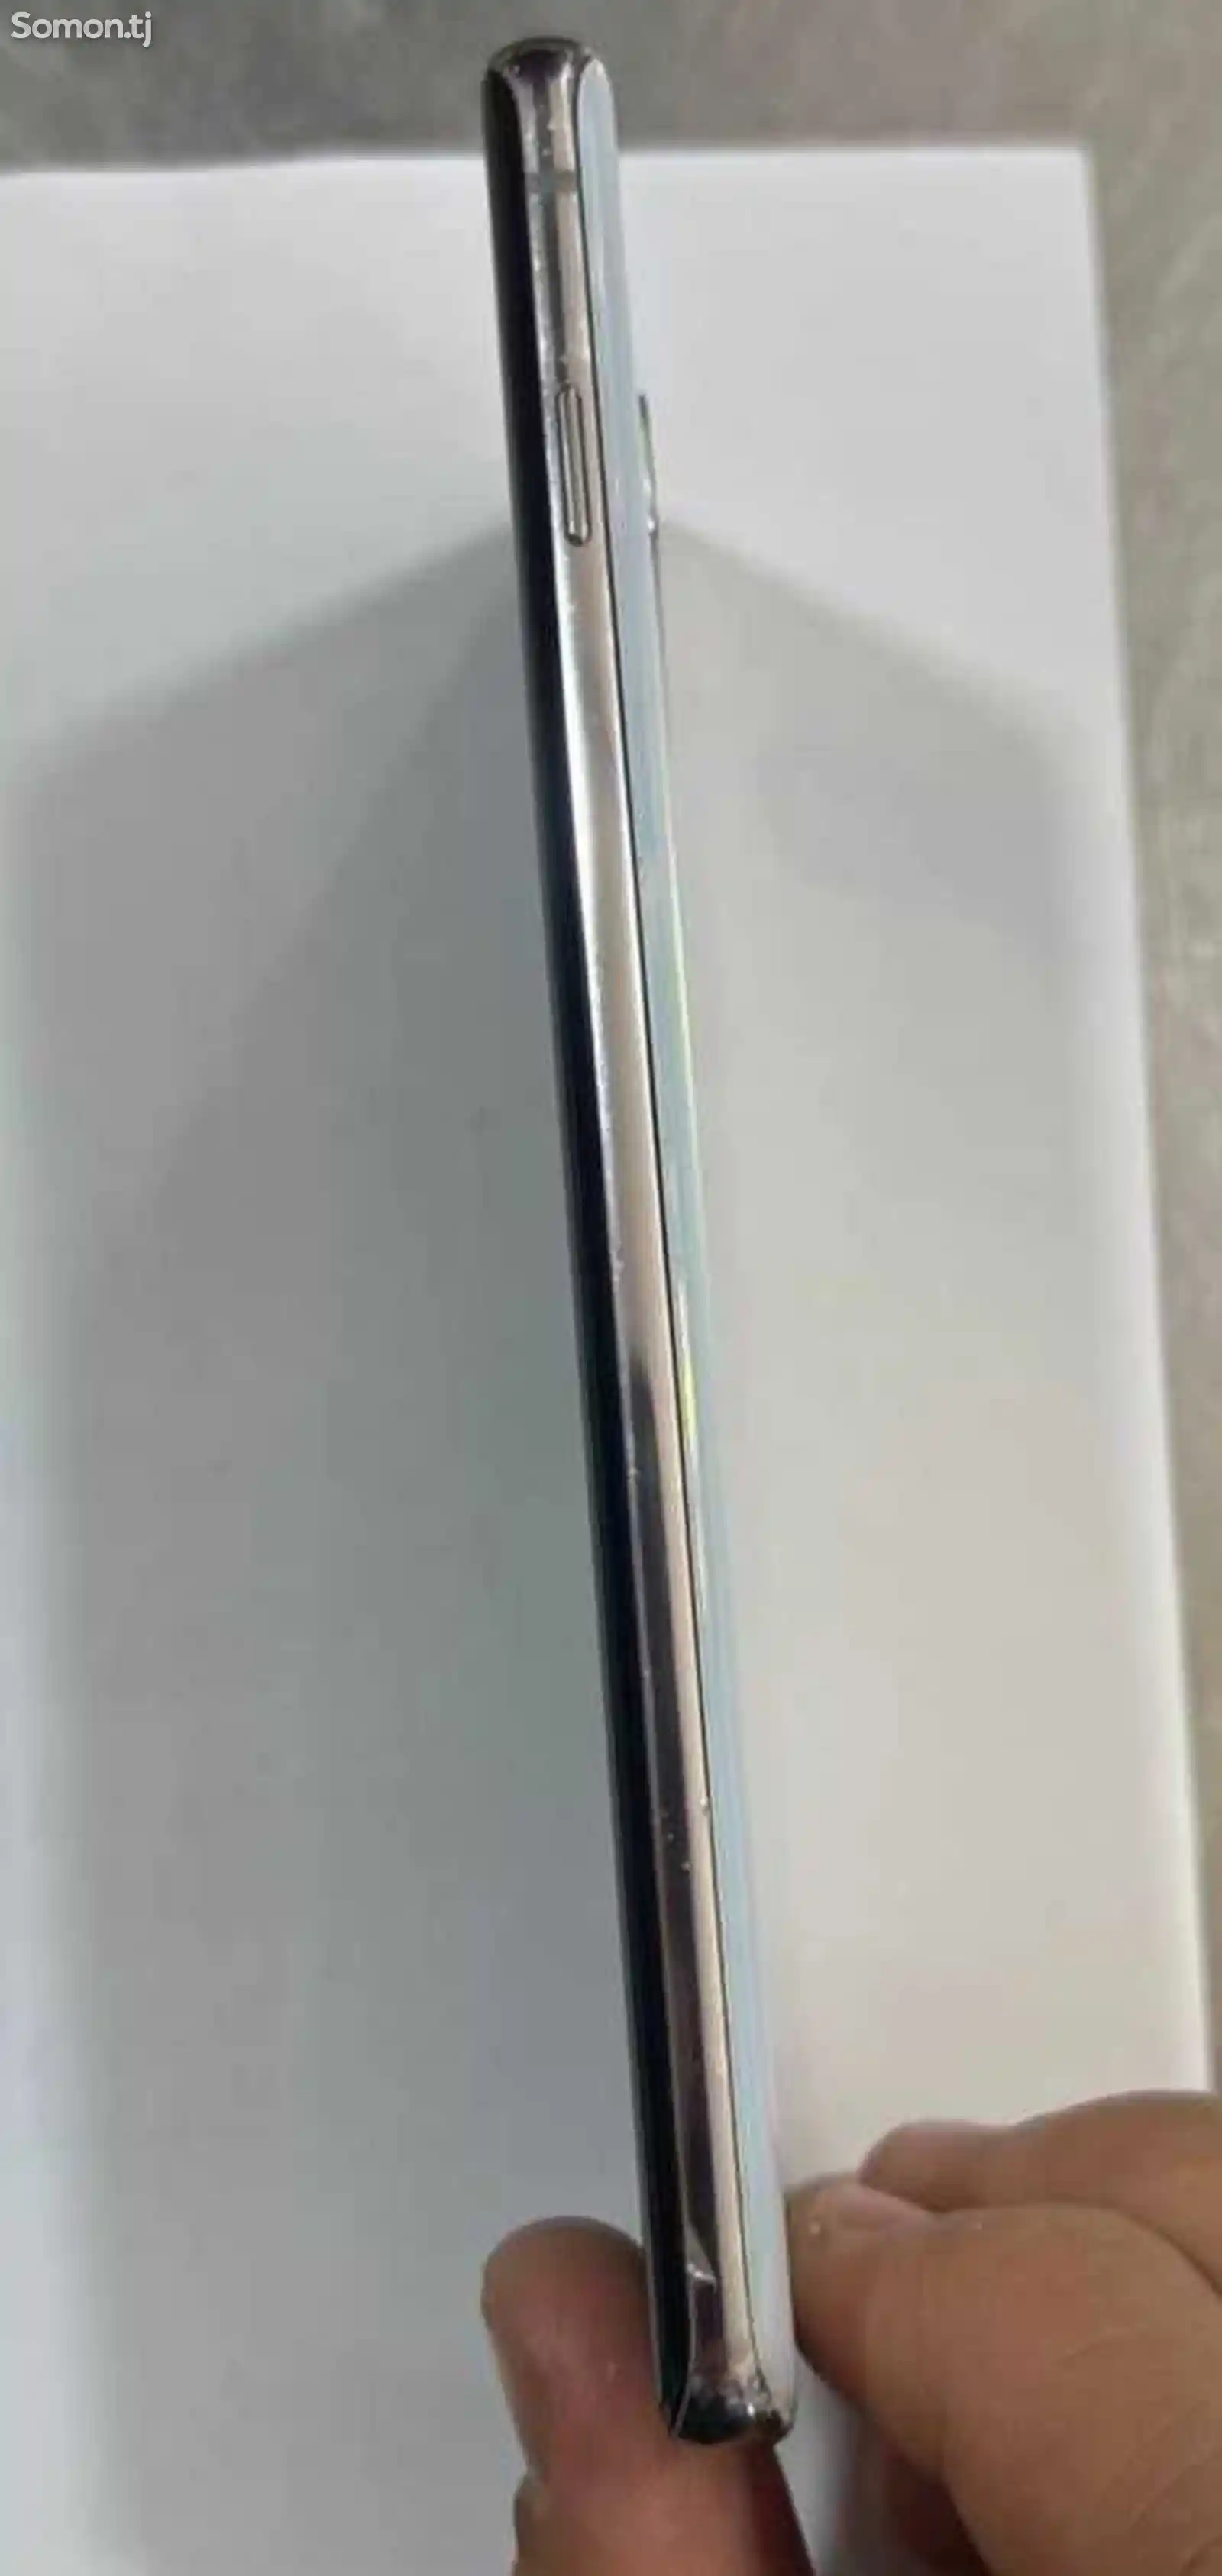 Samsung Galaxy S10-2